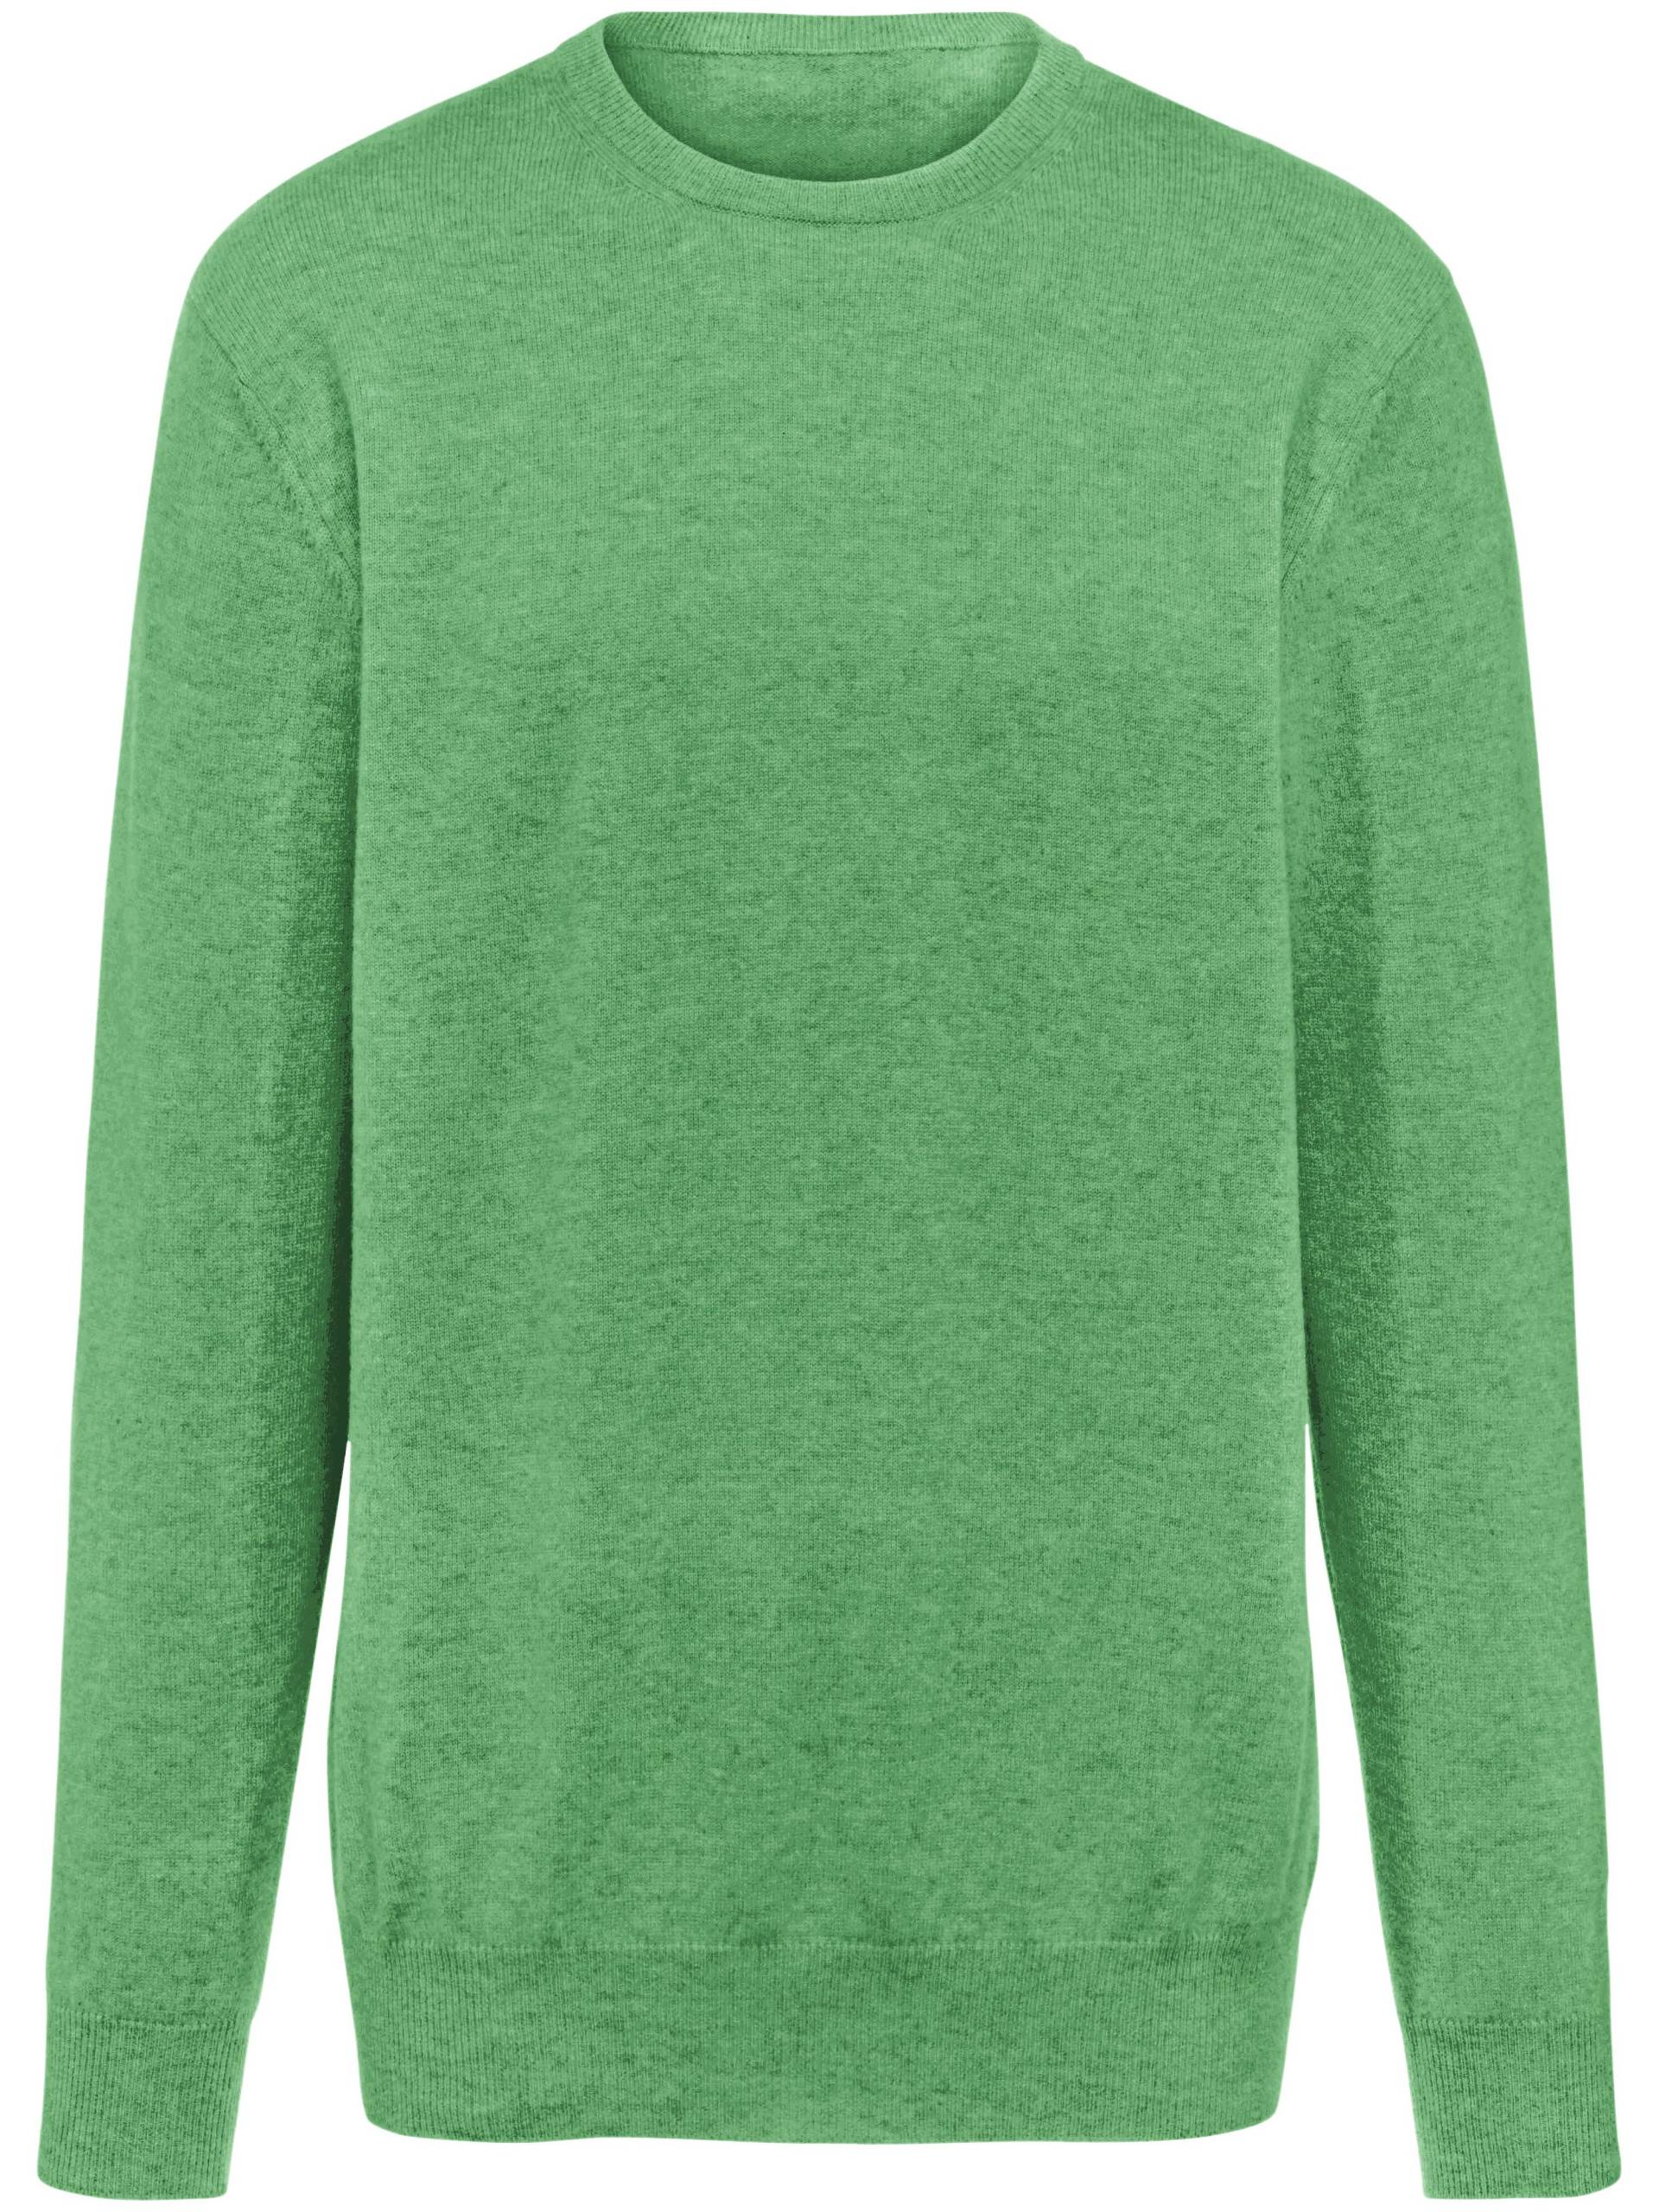 Pullover aus 100% Premium-Kaschmir Modell Ralph Peter Hahn Cashmere grün Größe: 48 von Peter Hahn Cashmere